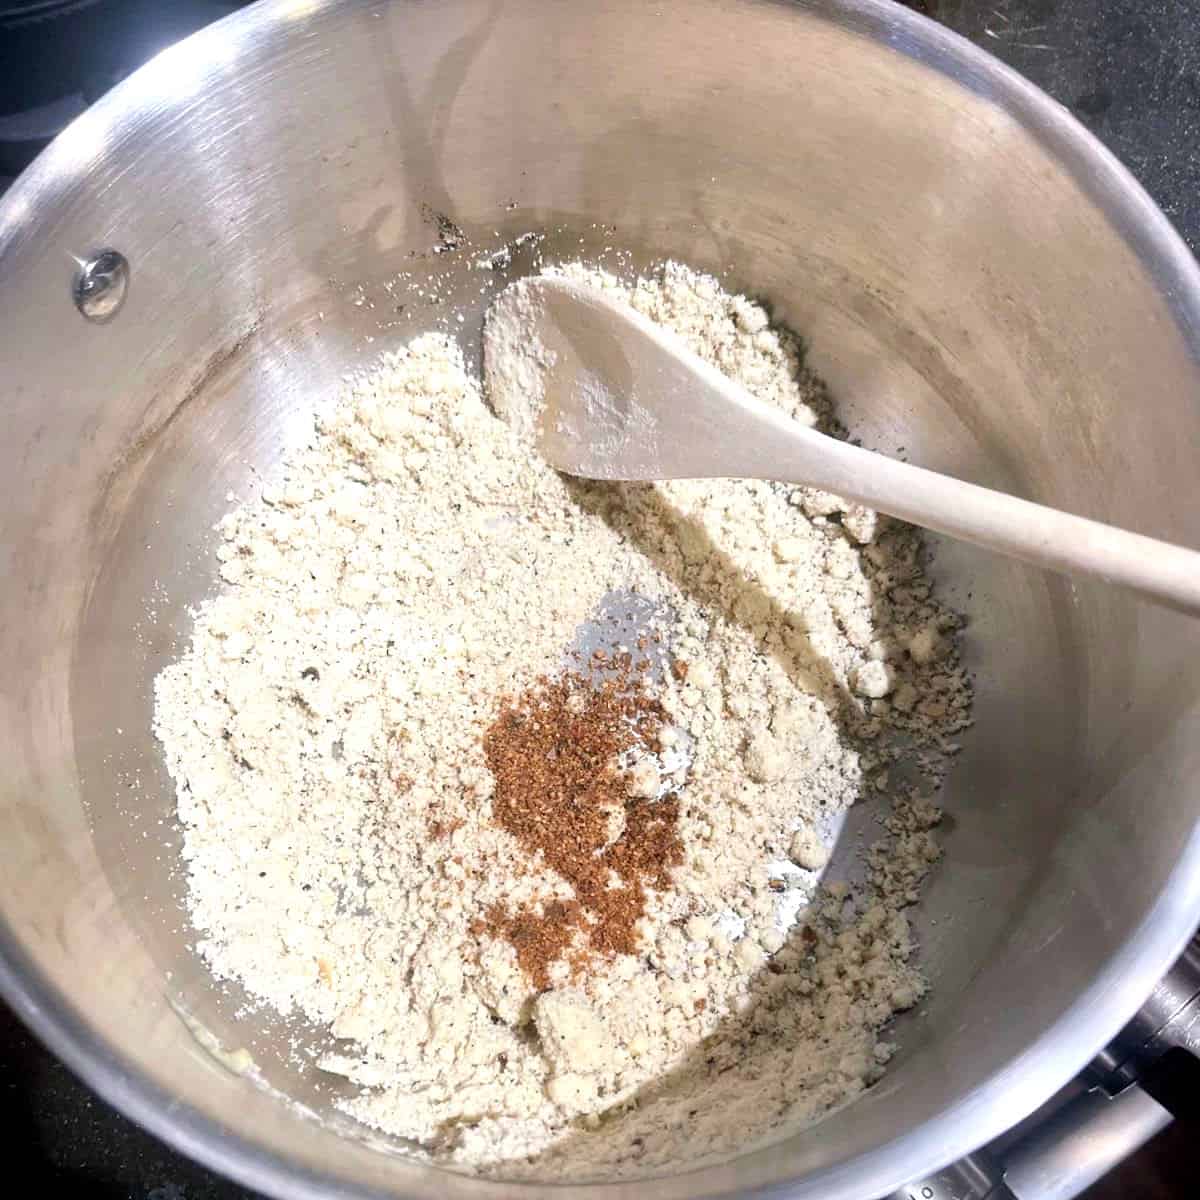 Nutmeg added to roux for vegan bechamel sauce for moussaka.